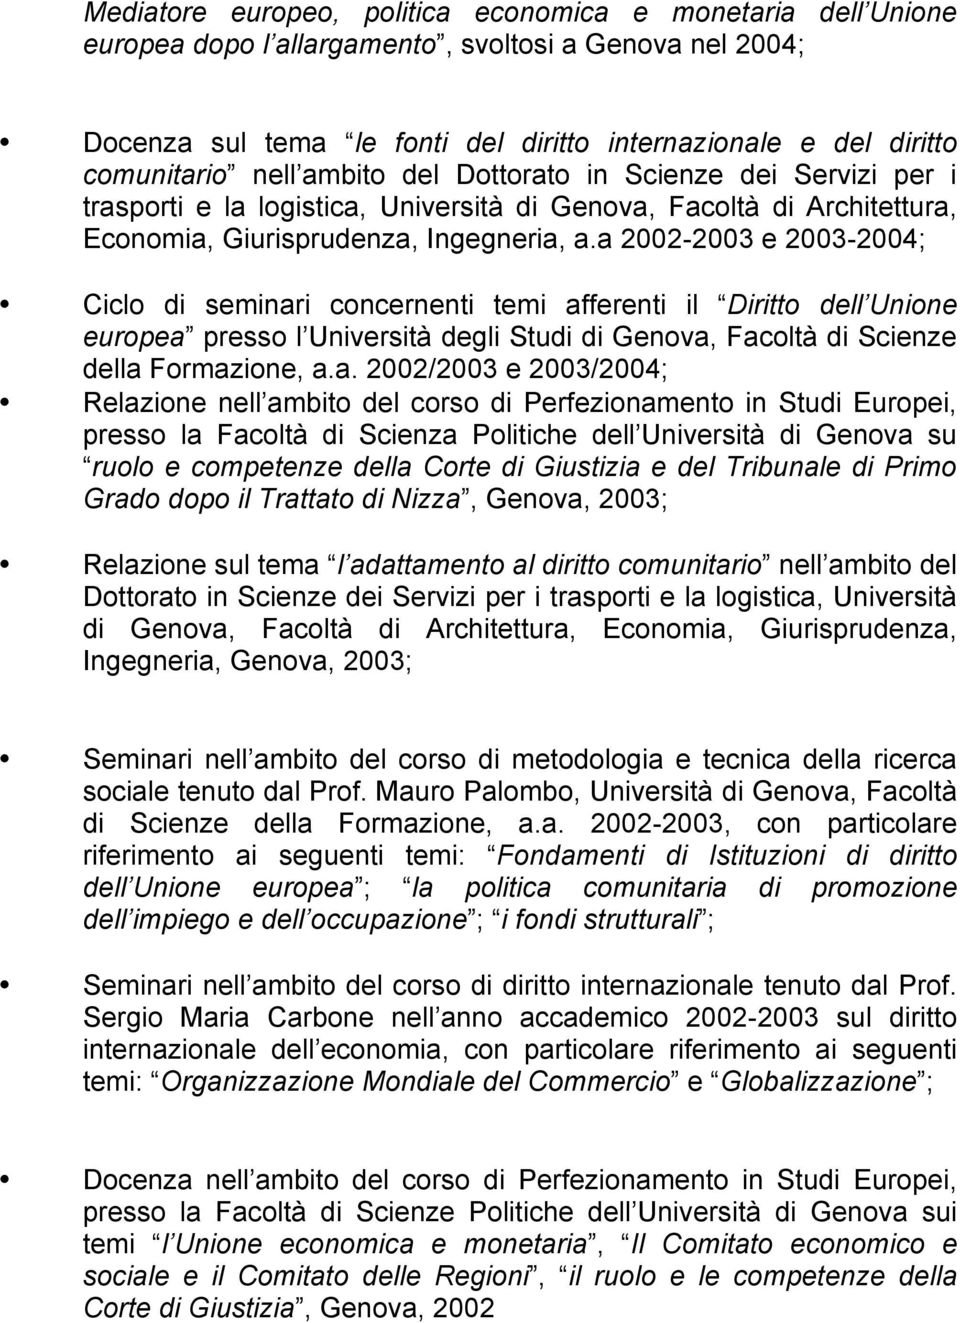 a 2002-2003 e 2003-2004; Ciclo di seminari concernenti temi afferenti il Diritto dell Unione europea presso l Università degli Studi di Genova, Facoltà di Scienze della Formazione, a.a. 2002/2003 e